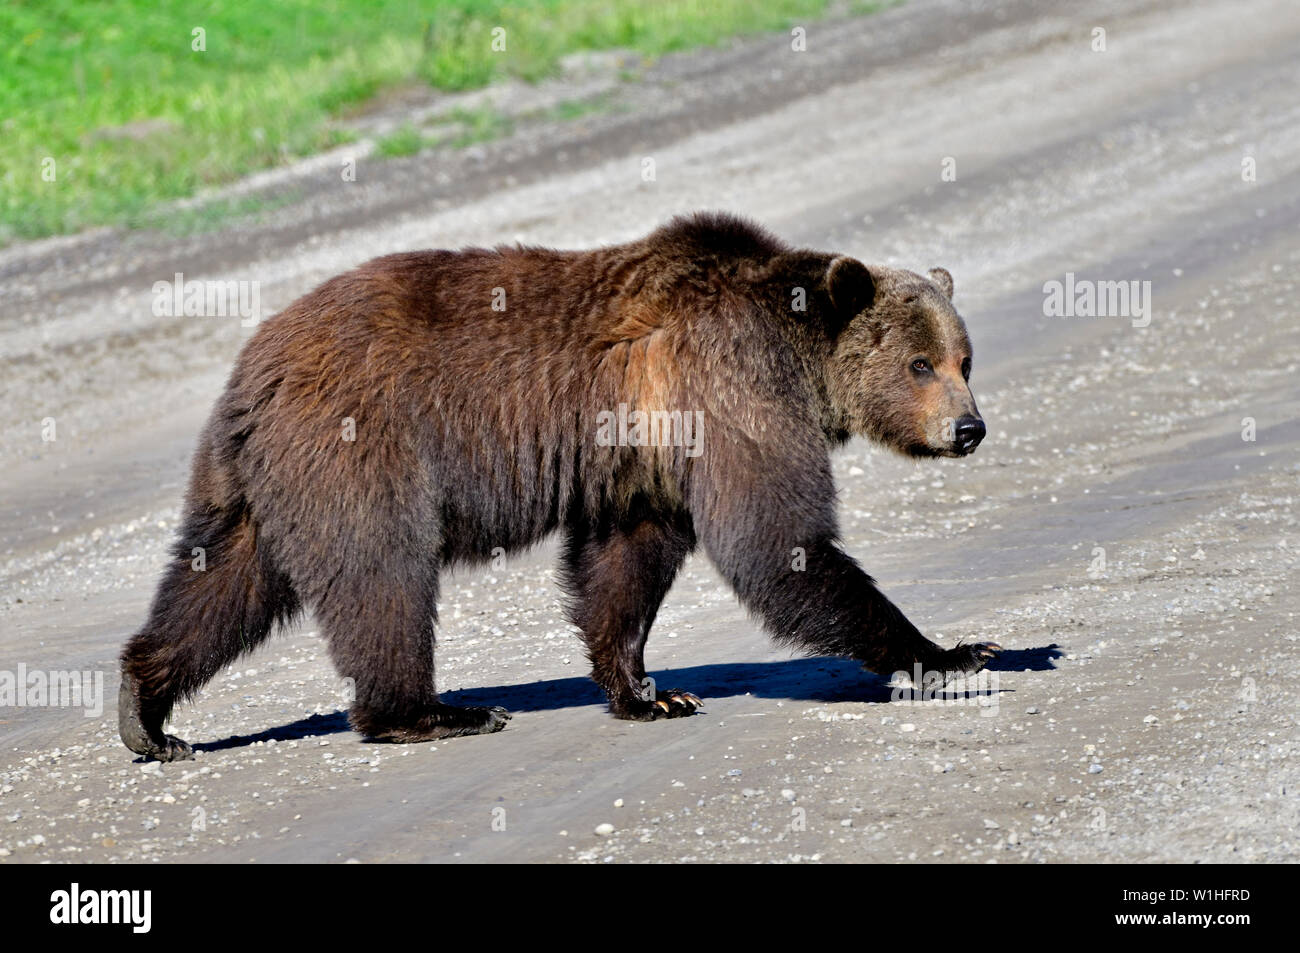 Eine Nahaufnahme eines Erwachsenen grizzly Bär "Ursus arctos" gehen über eine Schotterstraße in ländlichen Alberta Kanada Stockfoto